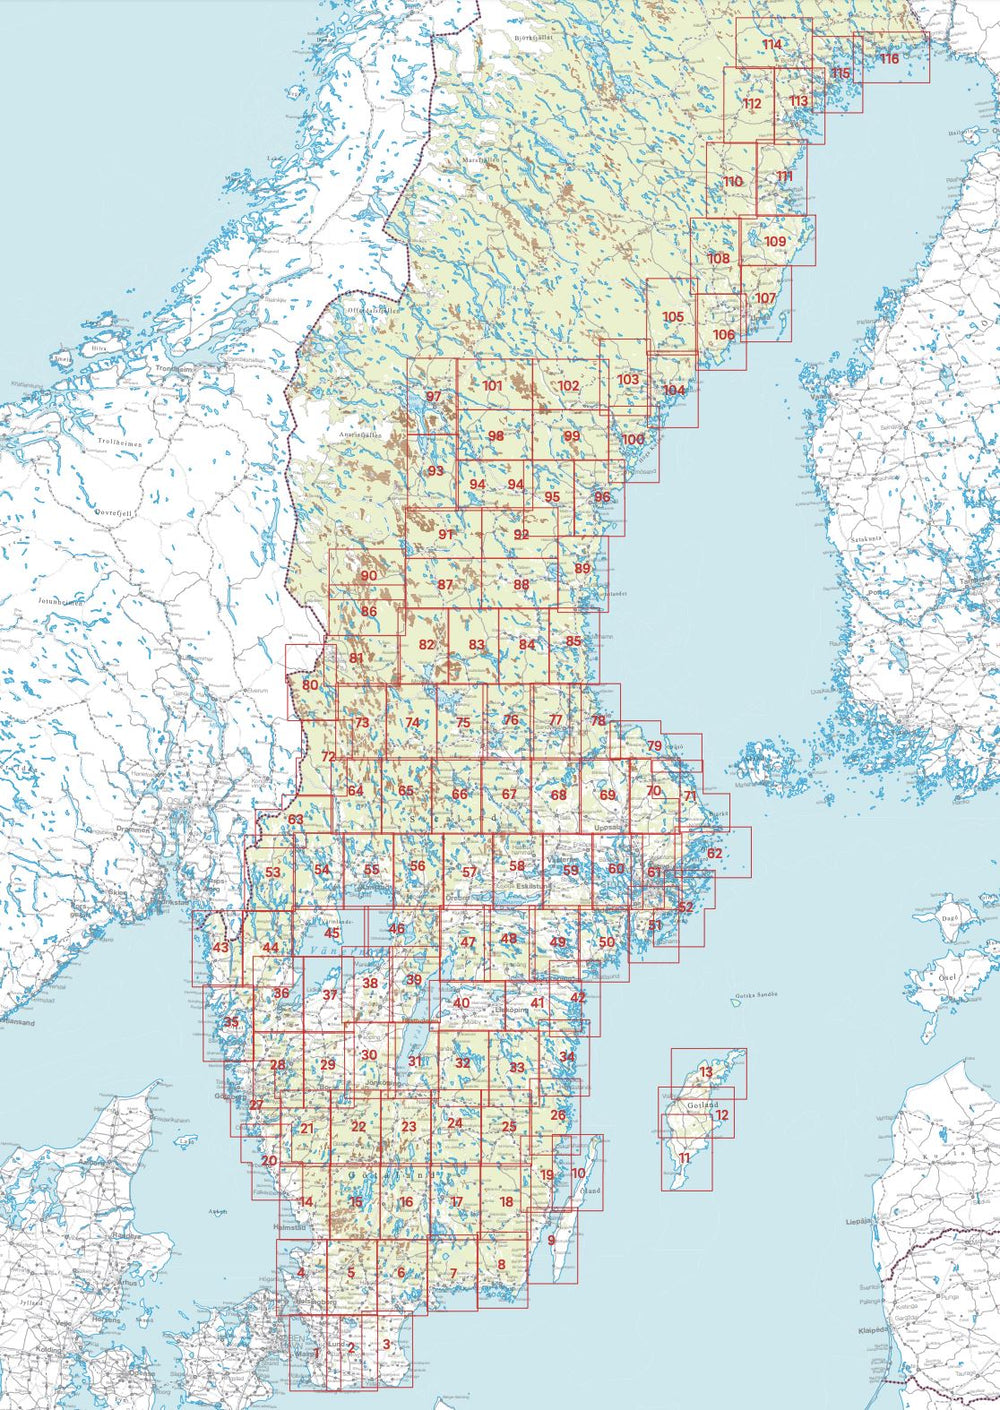 Carte topographique n° 14 - Halmstad (Suède) | Norstedts - Sverigeserien carte pliée Norstedts 